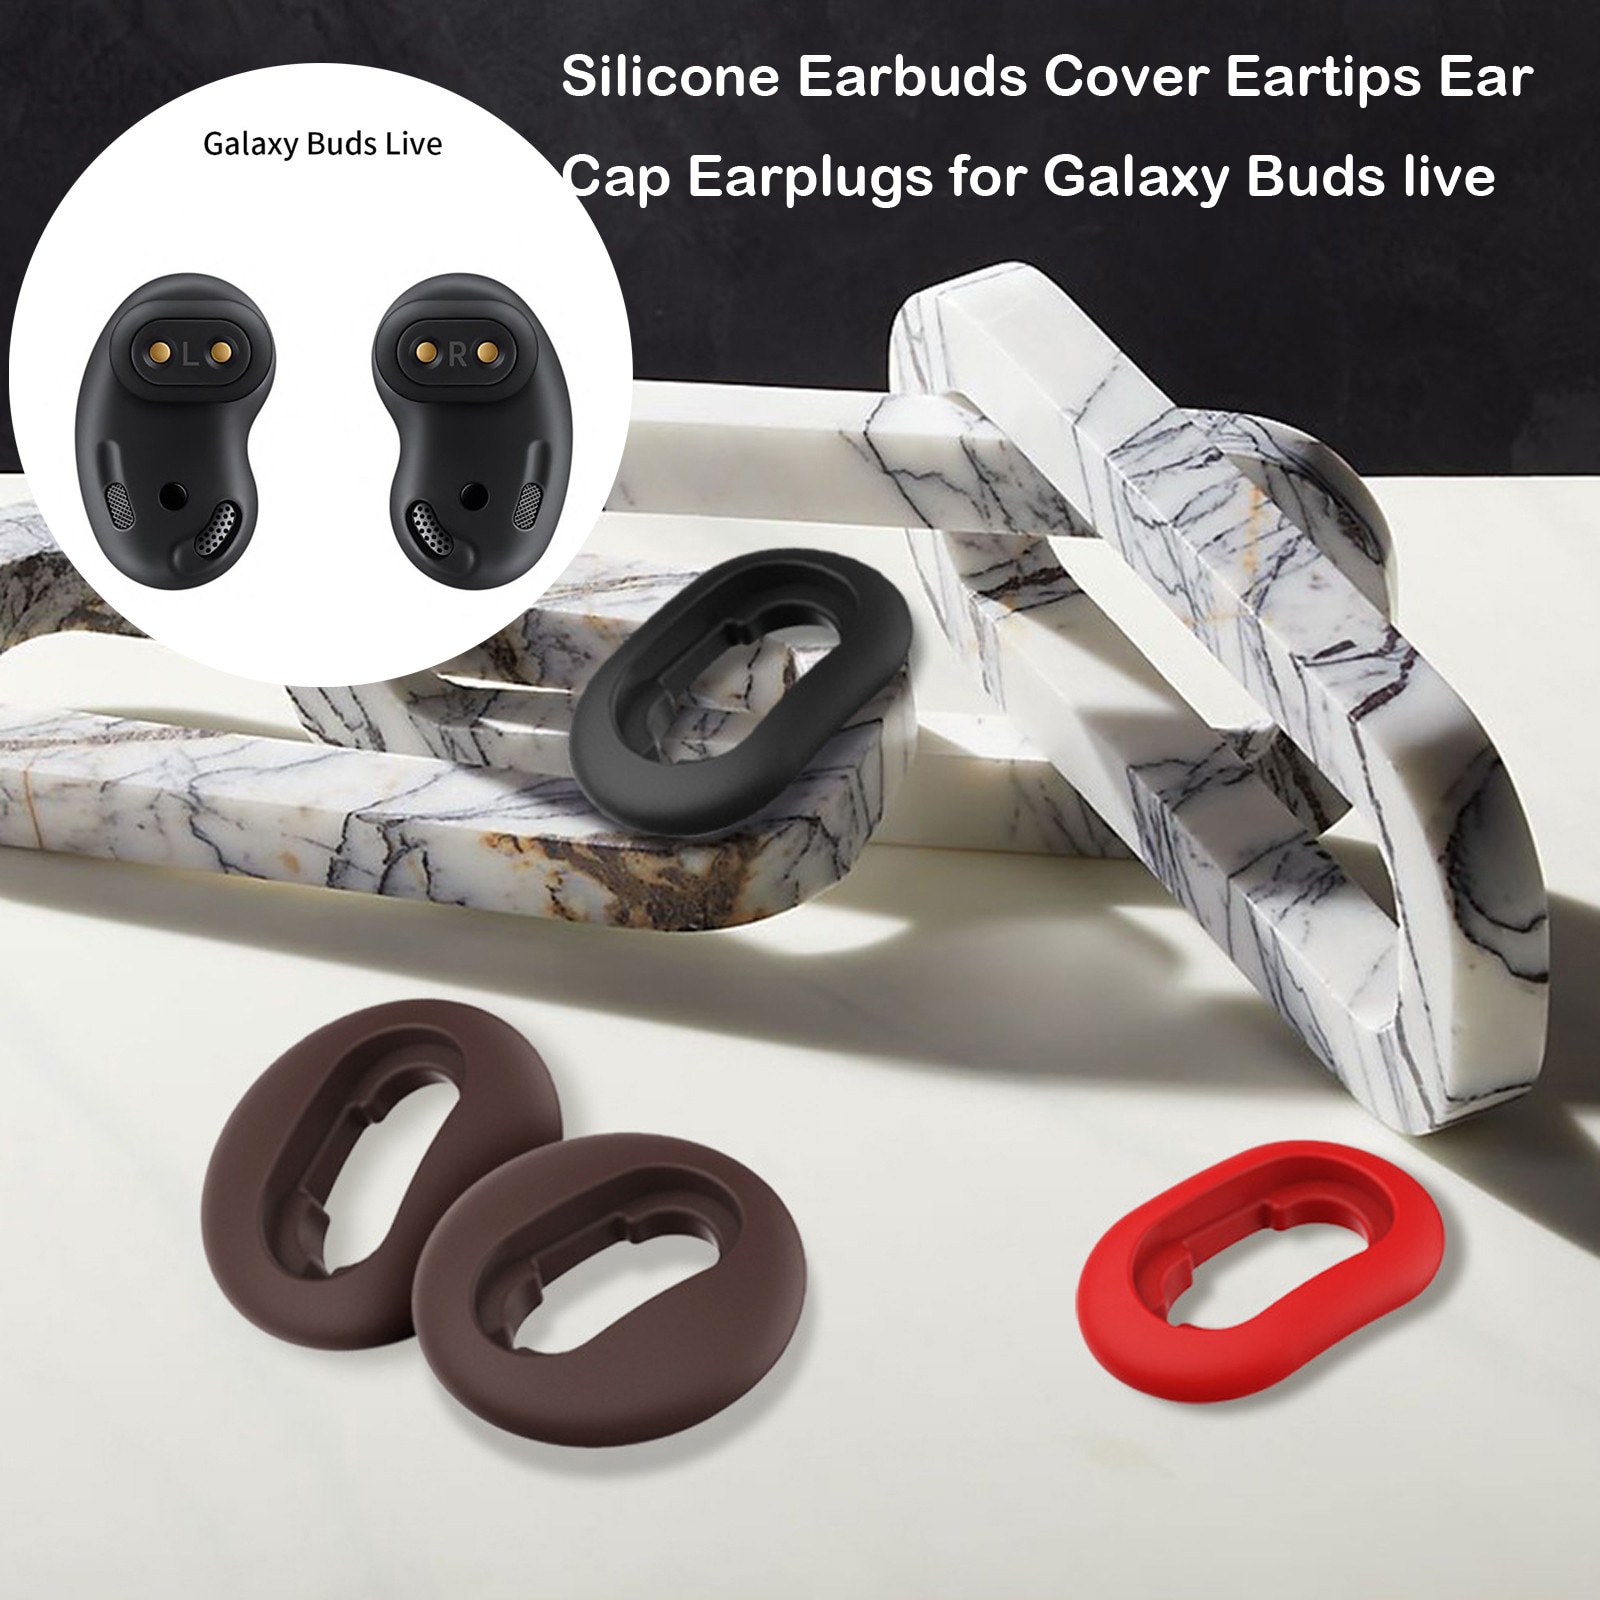 Zachte Siliconen Oordopjes Cover Oordopjes Oor Cap Oordopjes Voor S-AMSUNG -Galaxy Knoppen Live Bluetooth Oortelefoon